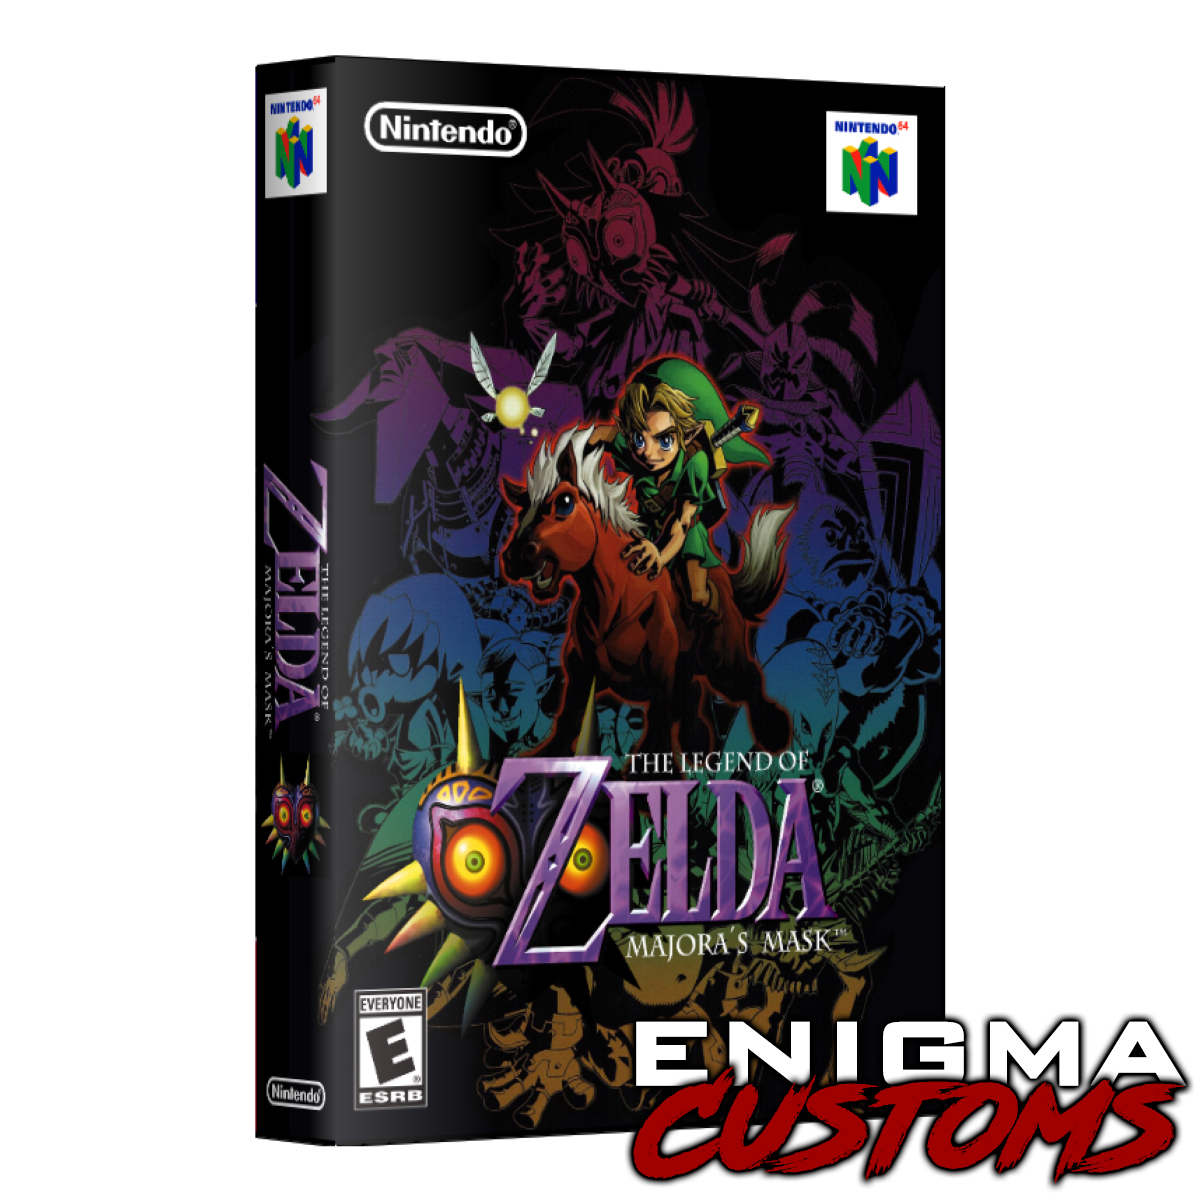  The Legend of Zelda: Majora's Mask - Nintendo 64 : Nintendo 64:  Video Games